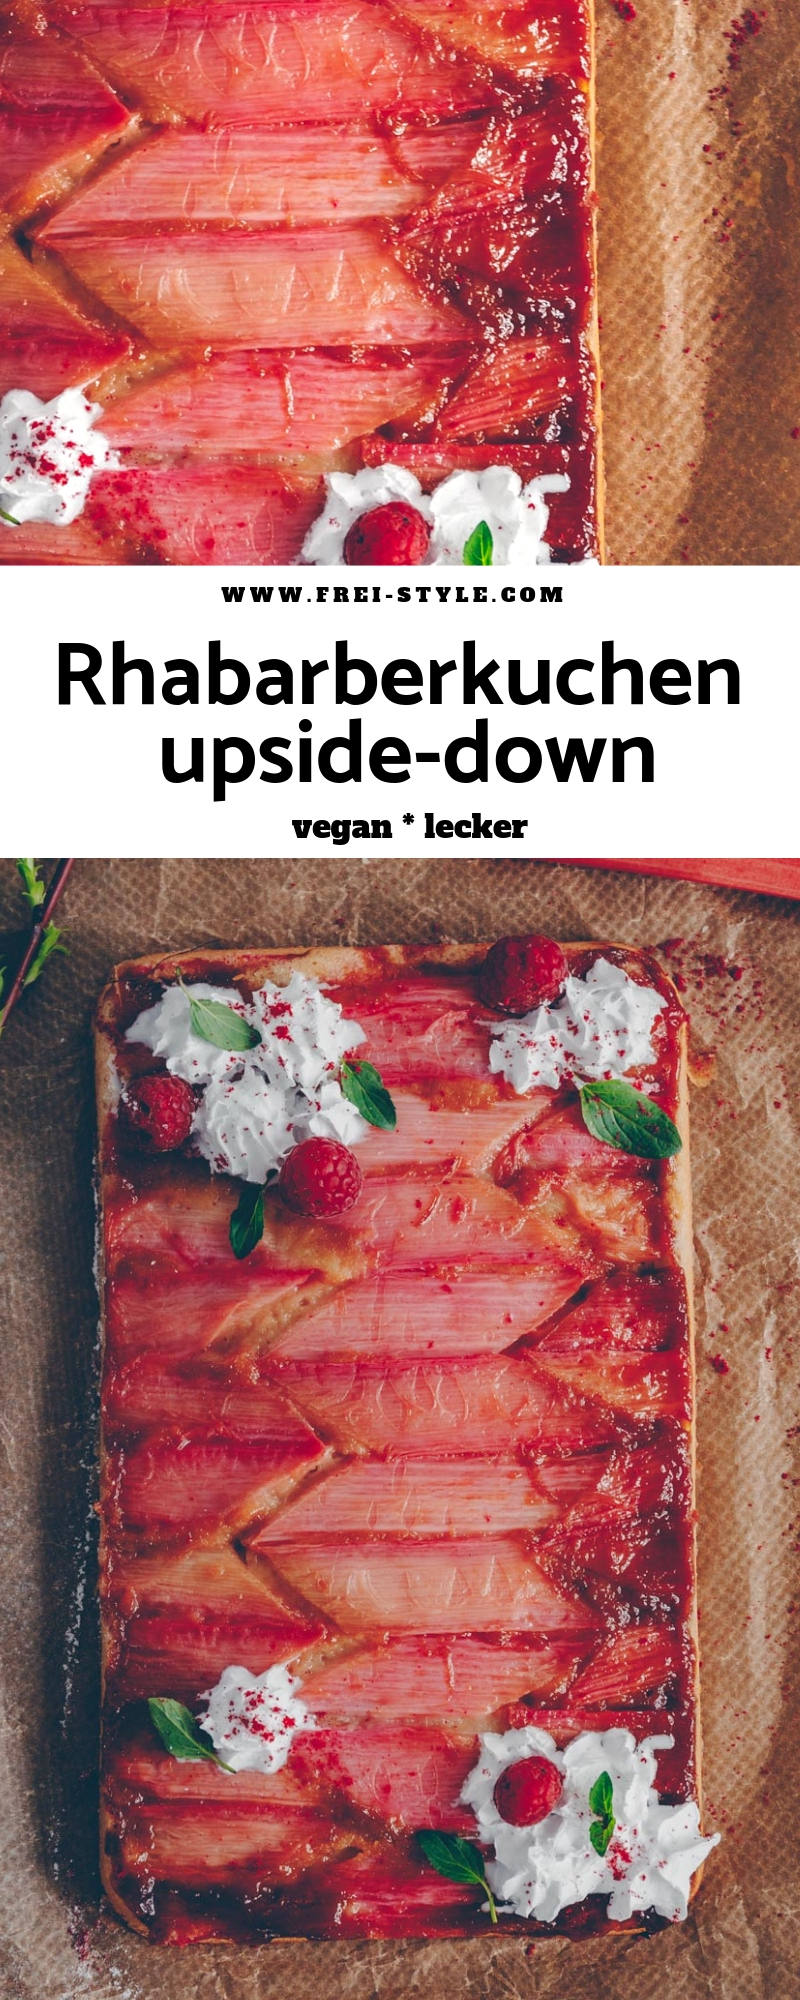 Rhabarberkuchen upside-down